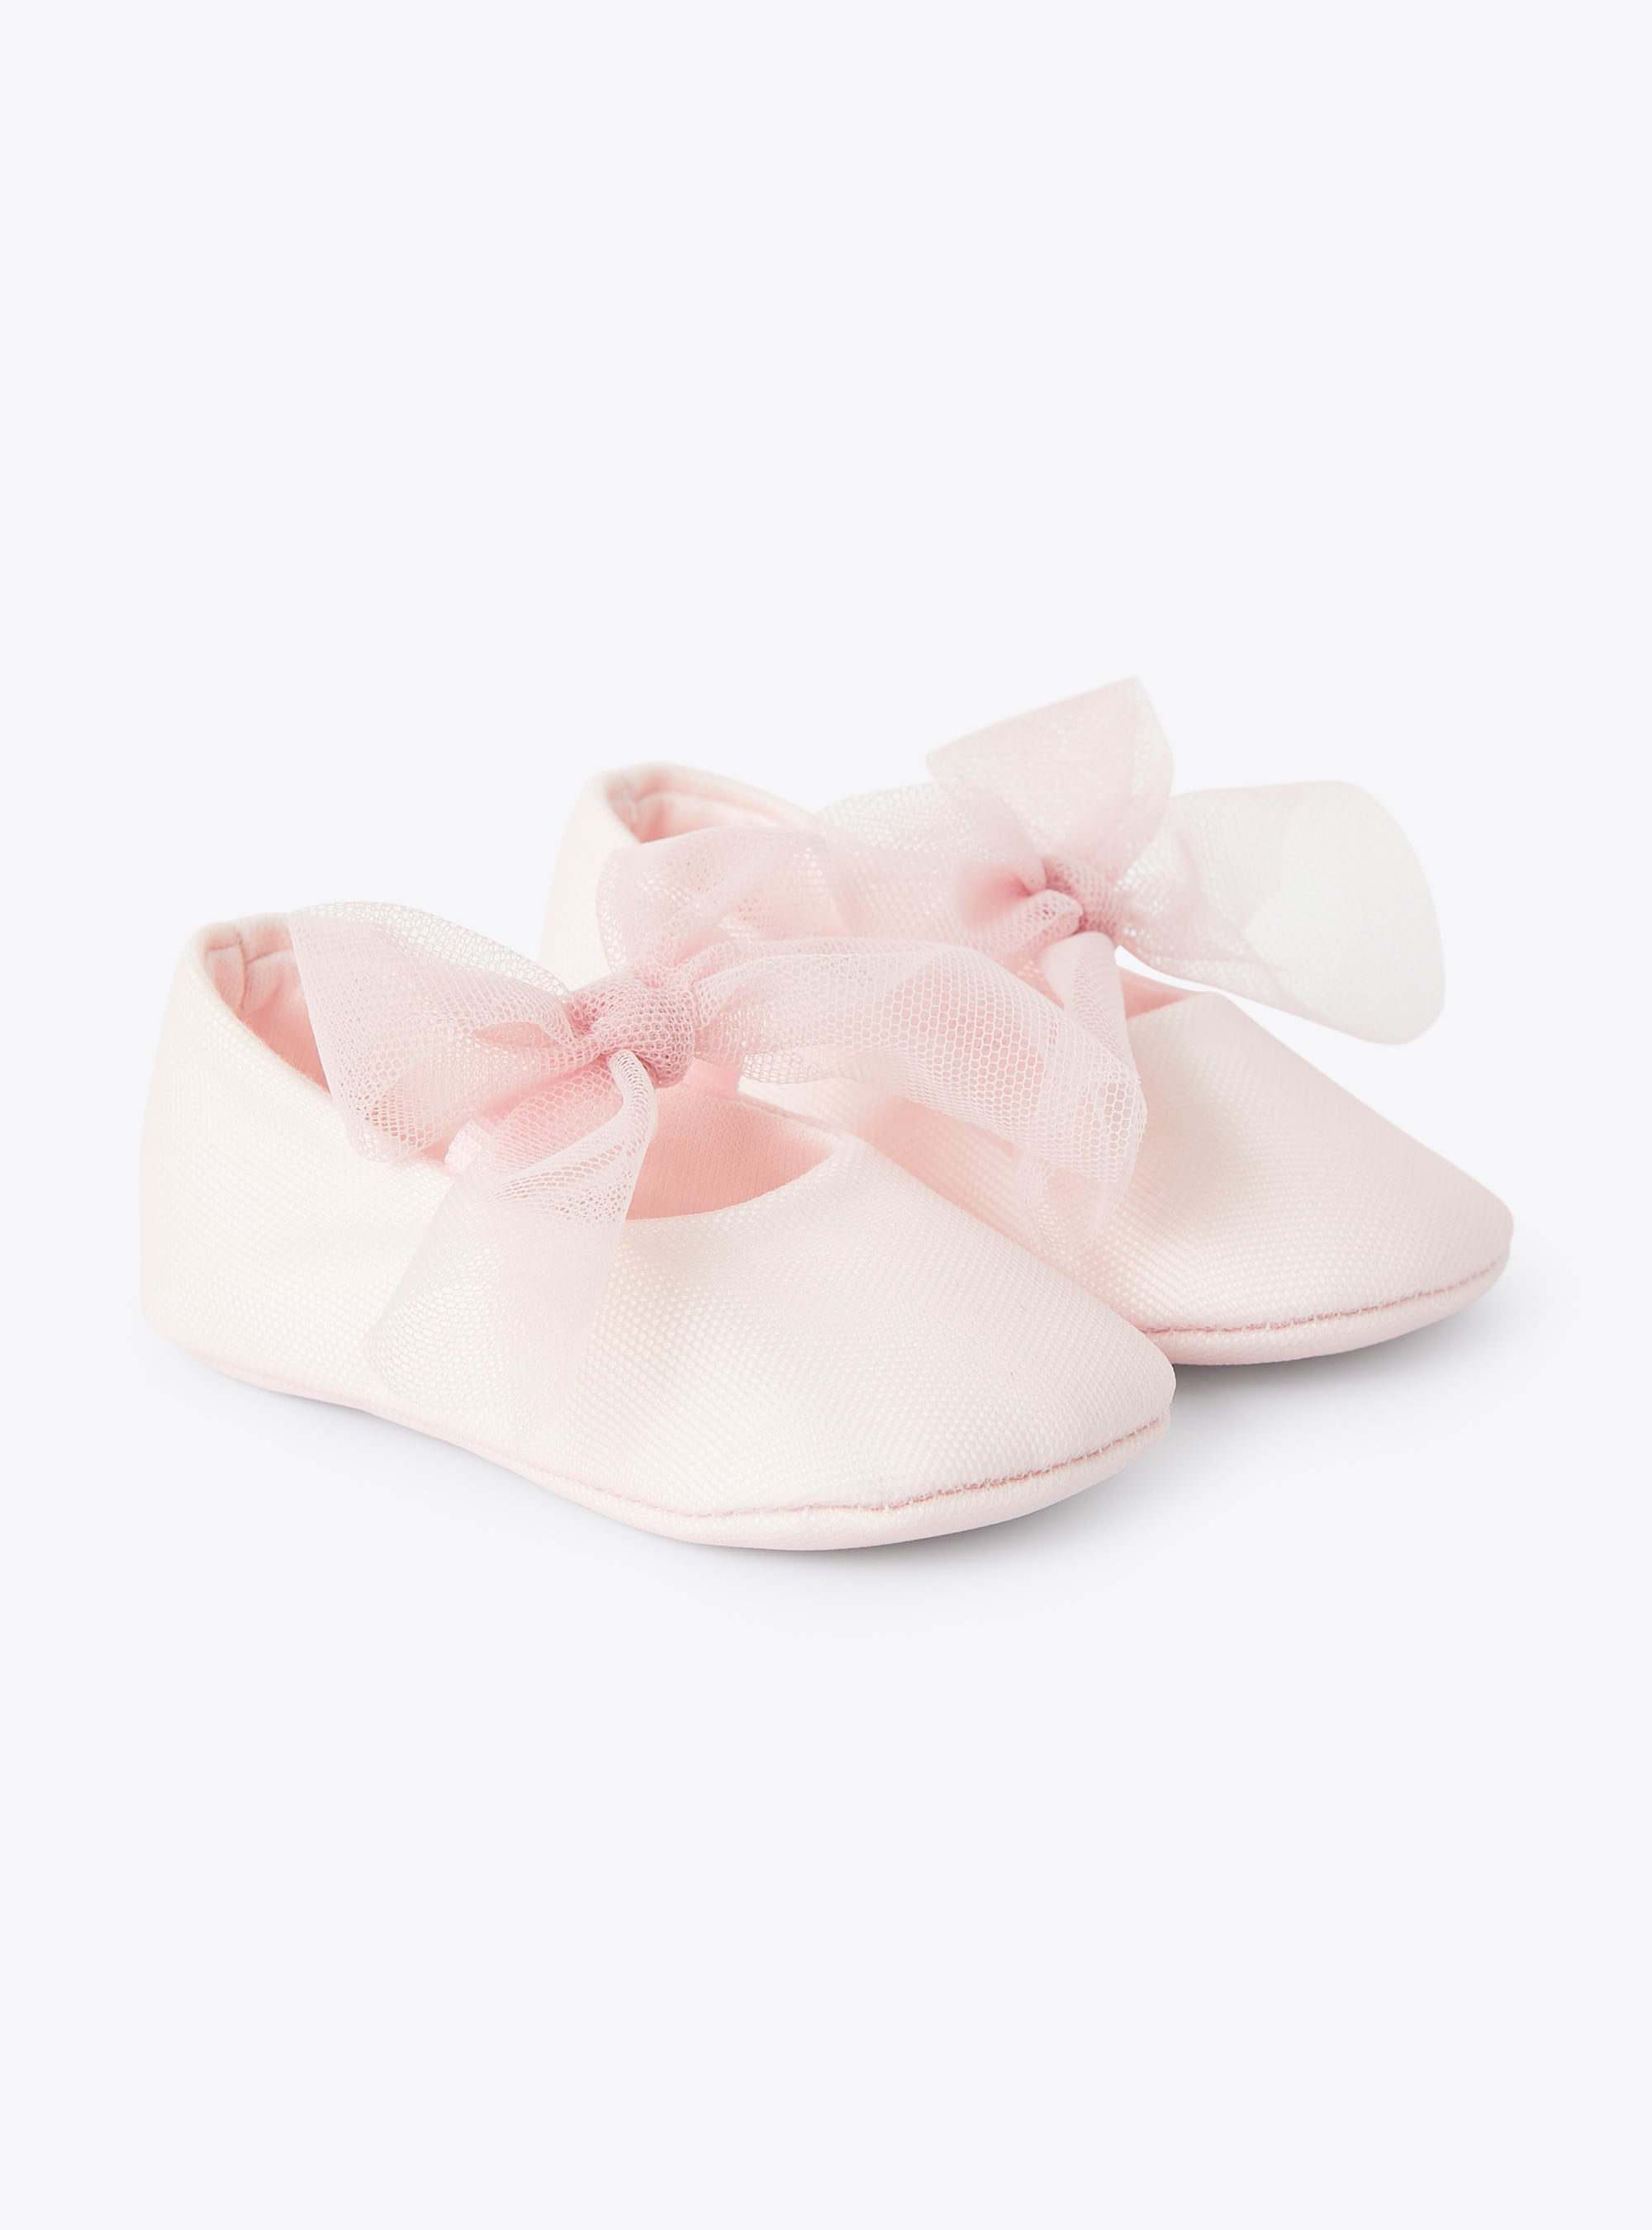 Scarpine da neonata con fiocco in tulle rosa - Scarpe - Il Gufo